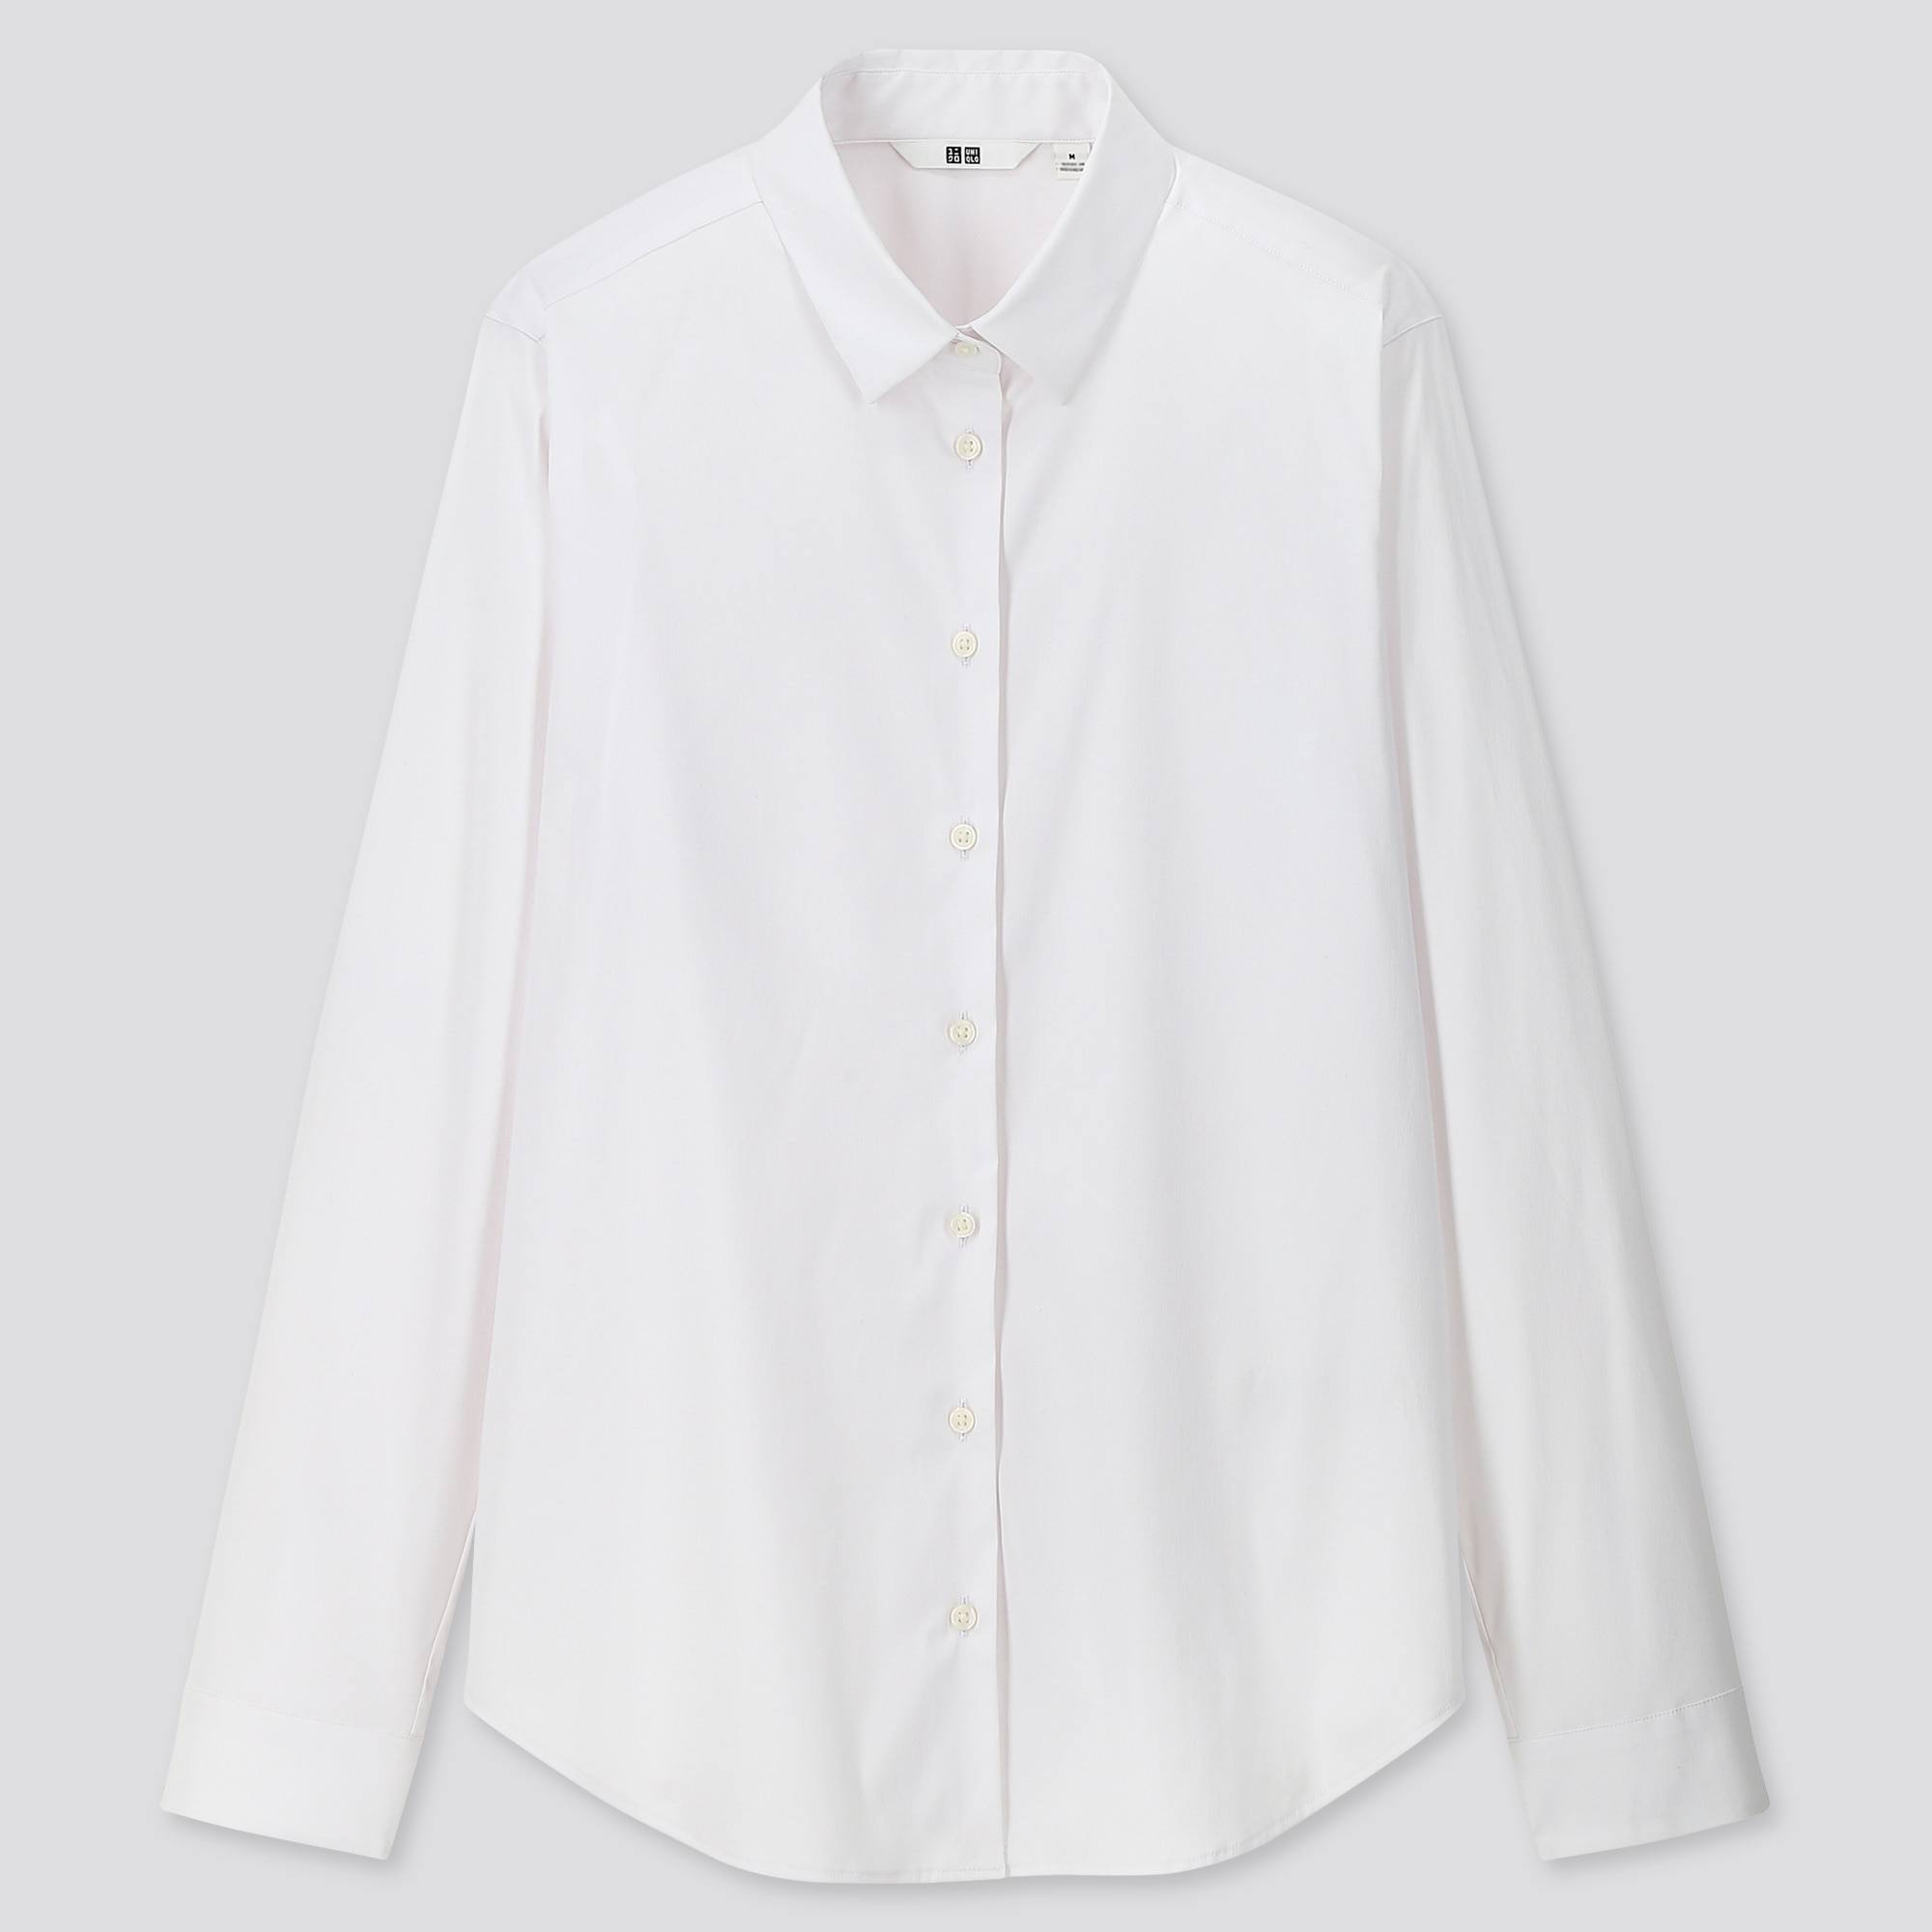 Buy > women's white long sleeve dress shirt > in stock